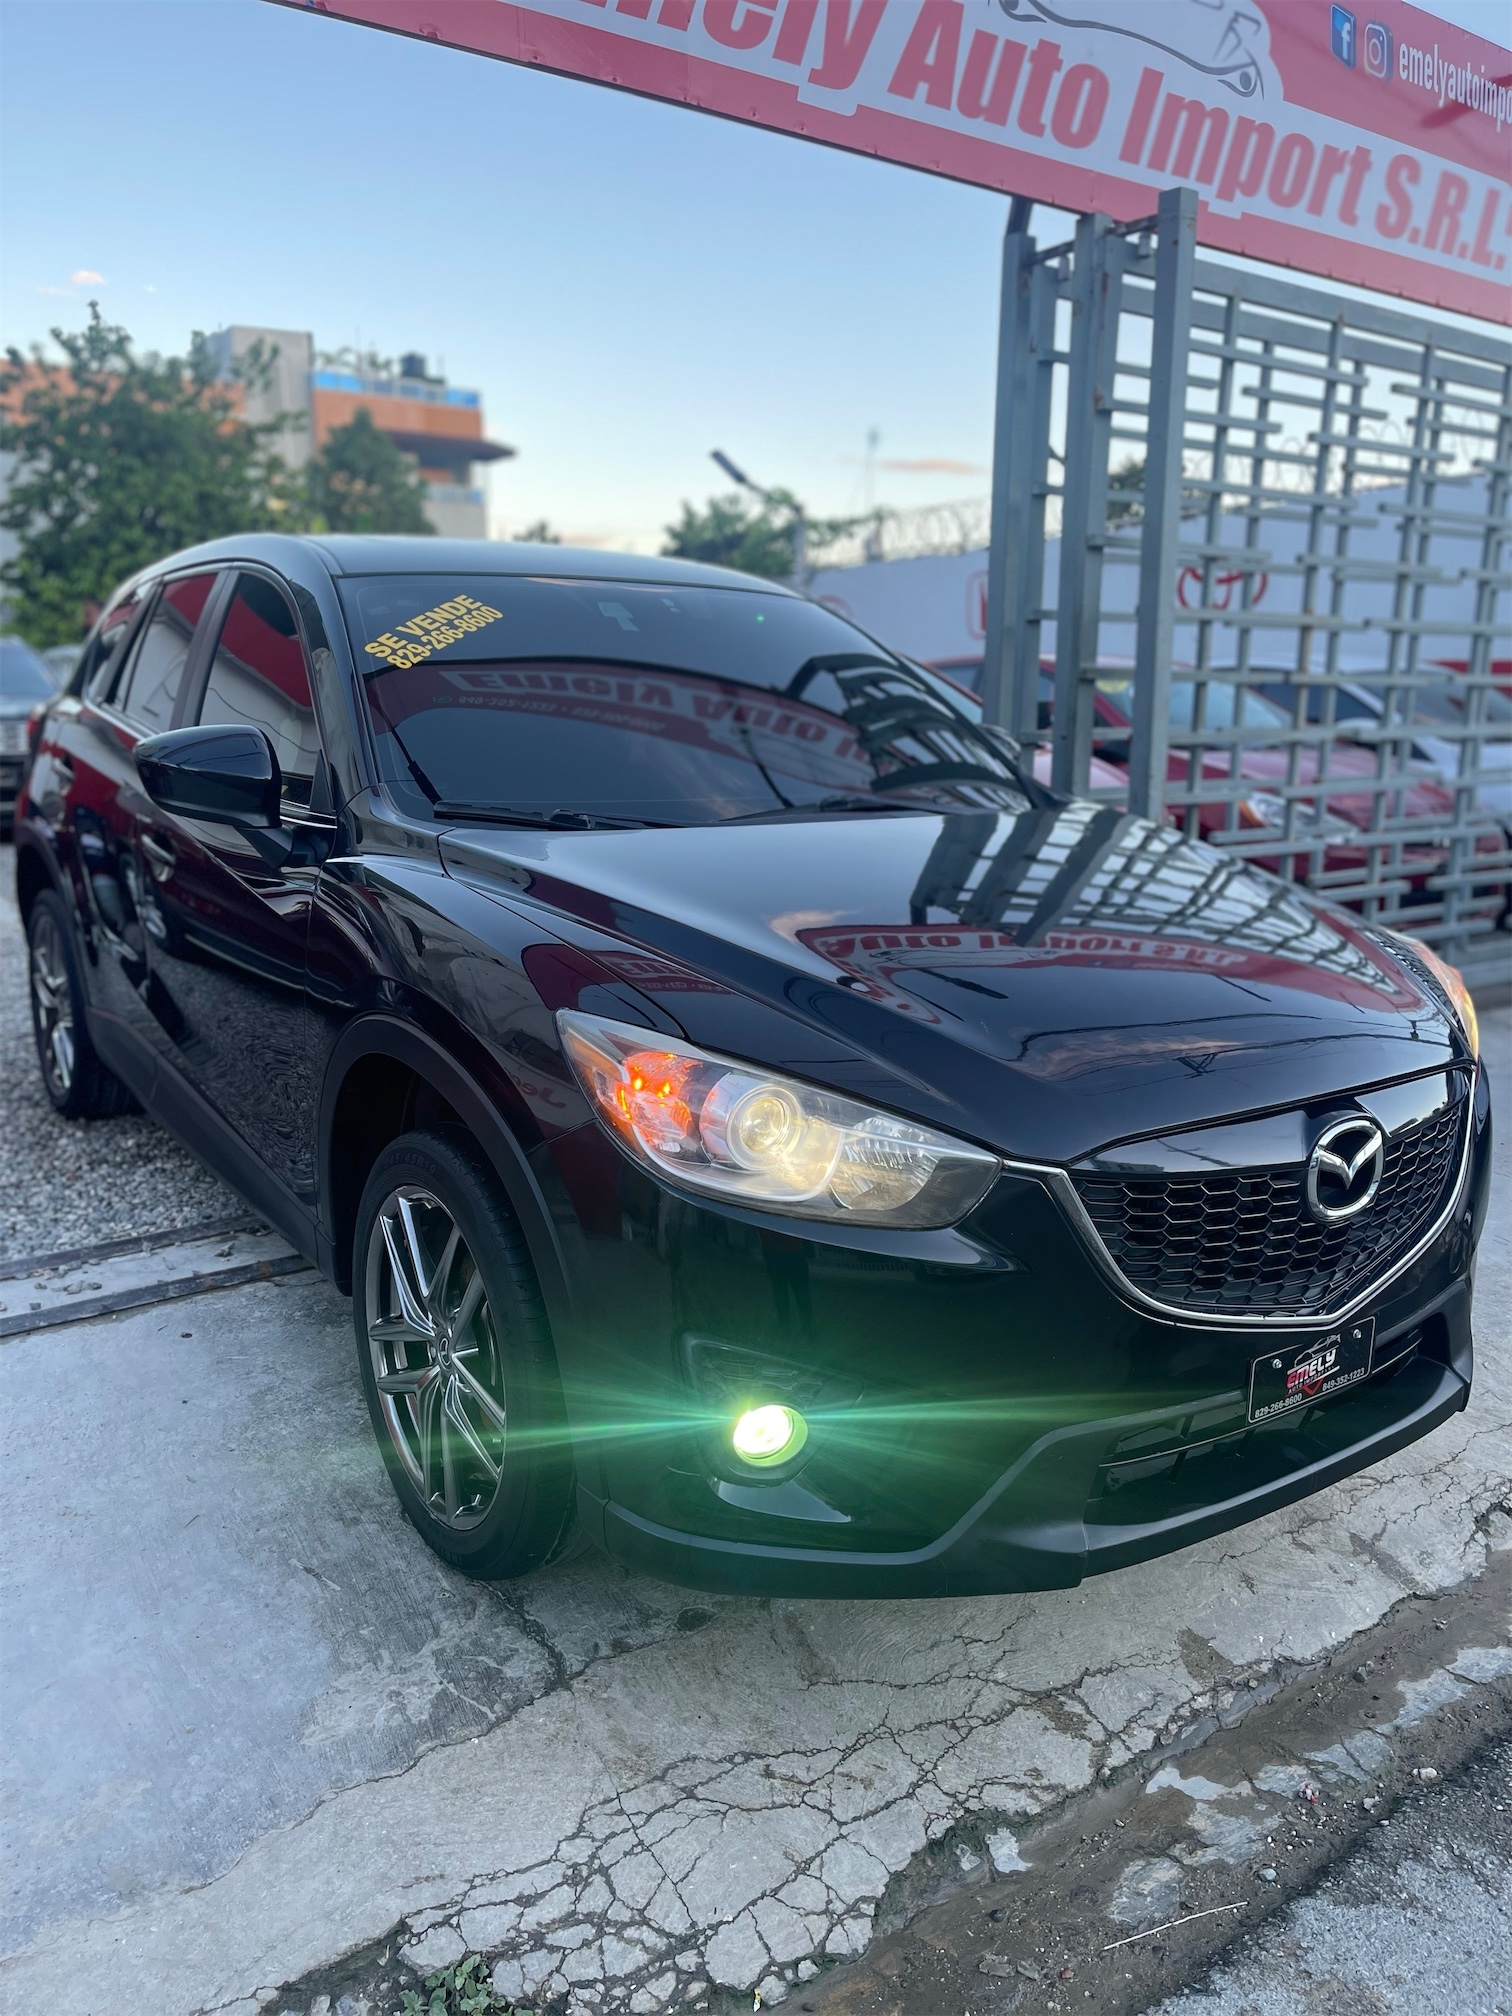 Mazda CX-5 TOURING 2014🔥$330,000🚨Financiamiento Disp💸No Importa Crédito💳Rec